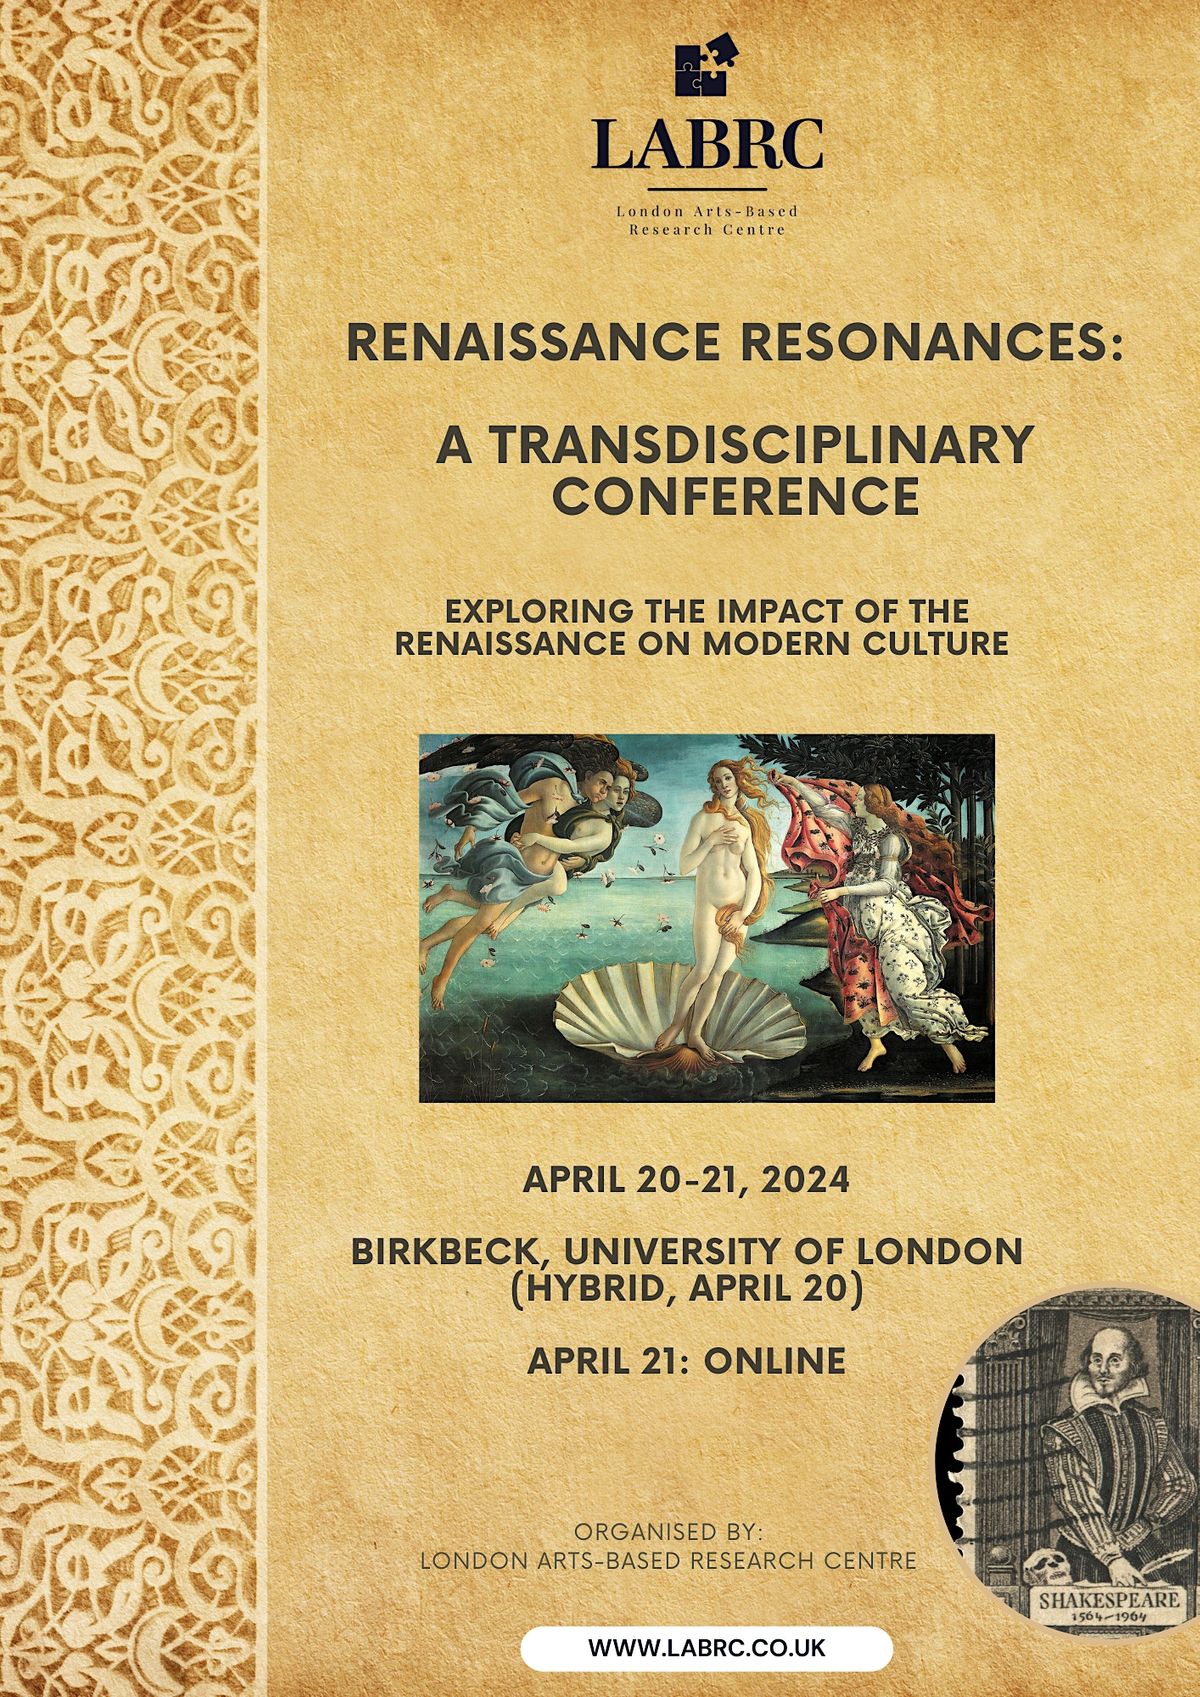 Renaissance Resonances: Across Time, Across Disciplines